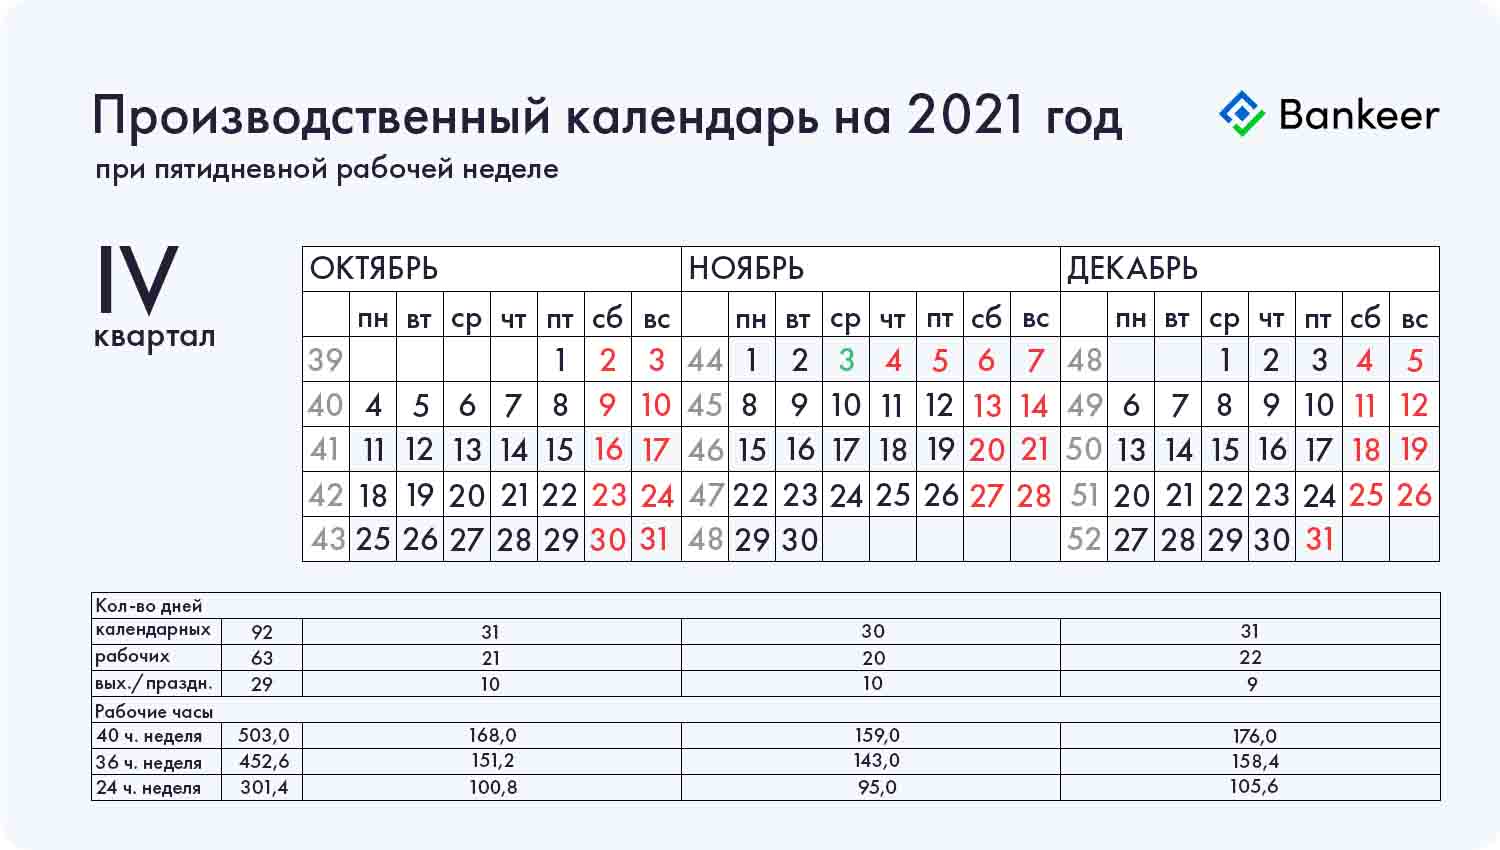 Производственный календарь на 2021 год 4 (IV) квартал